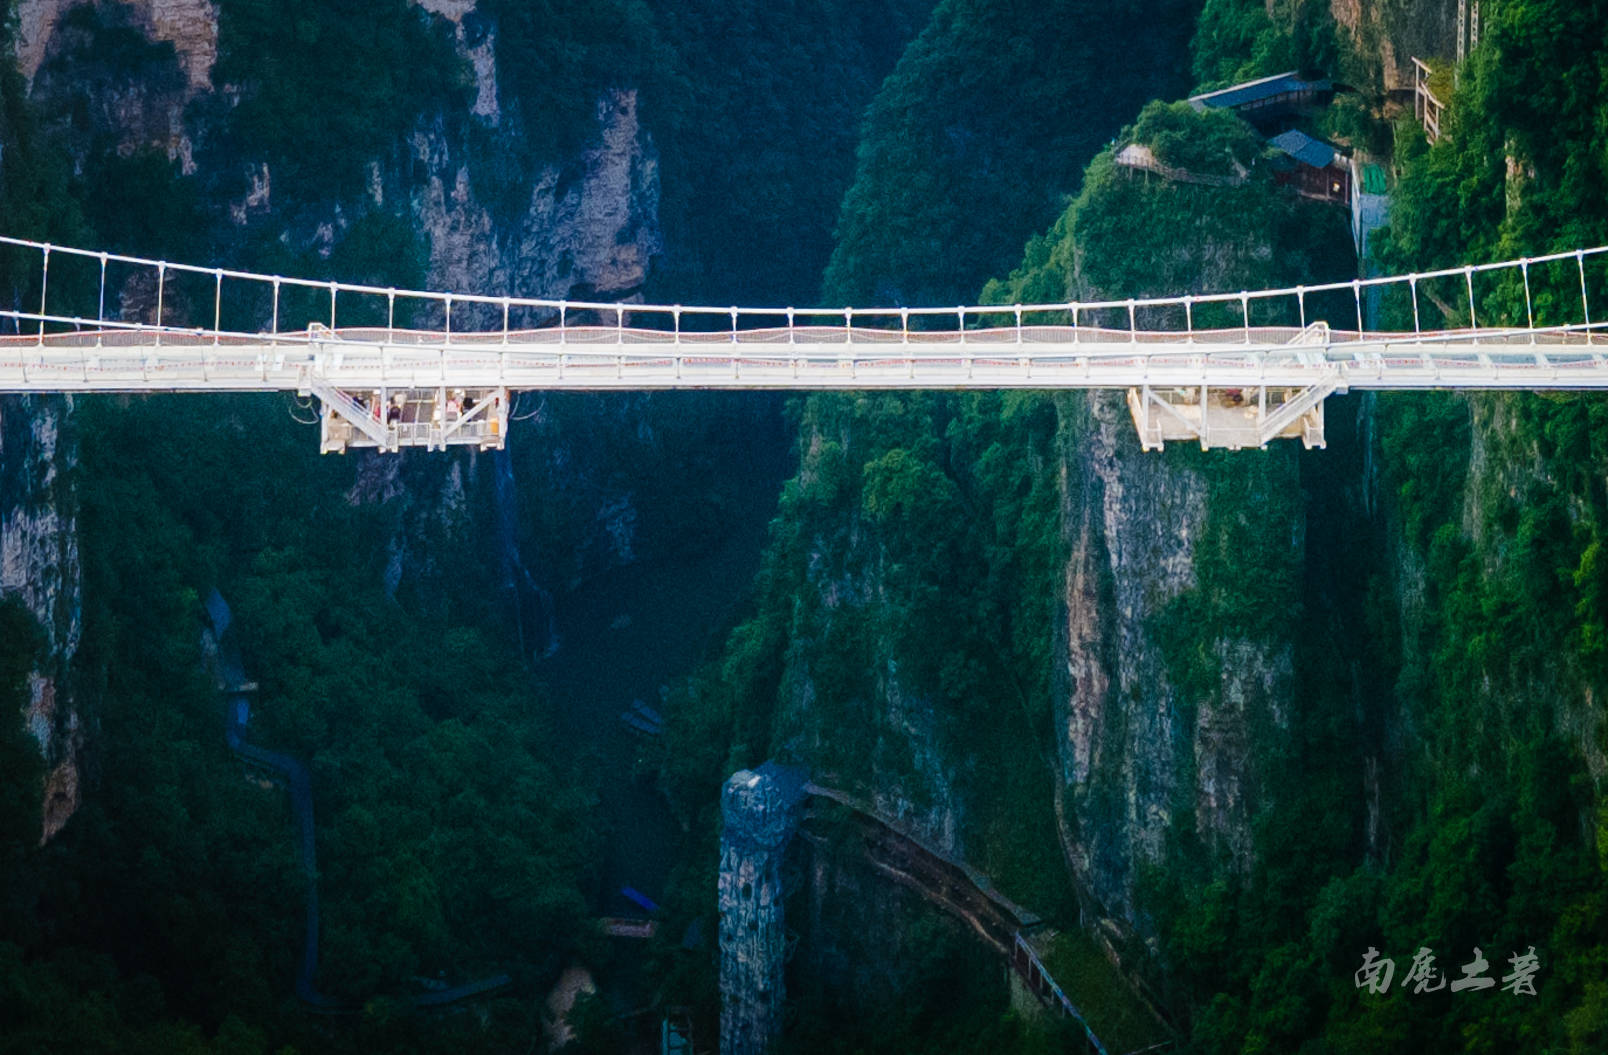 华南玻璃廊桥巅峰巨作挑战打破 8项 世界纪录最高、最长、最宽、最|廊桥|巨作|世界纪录_新浪网